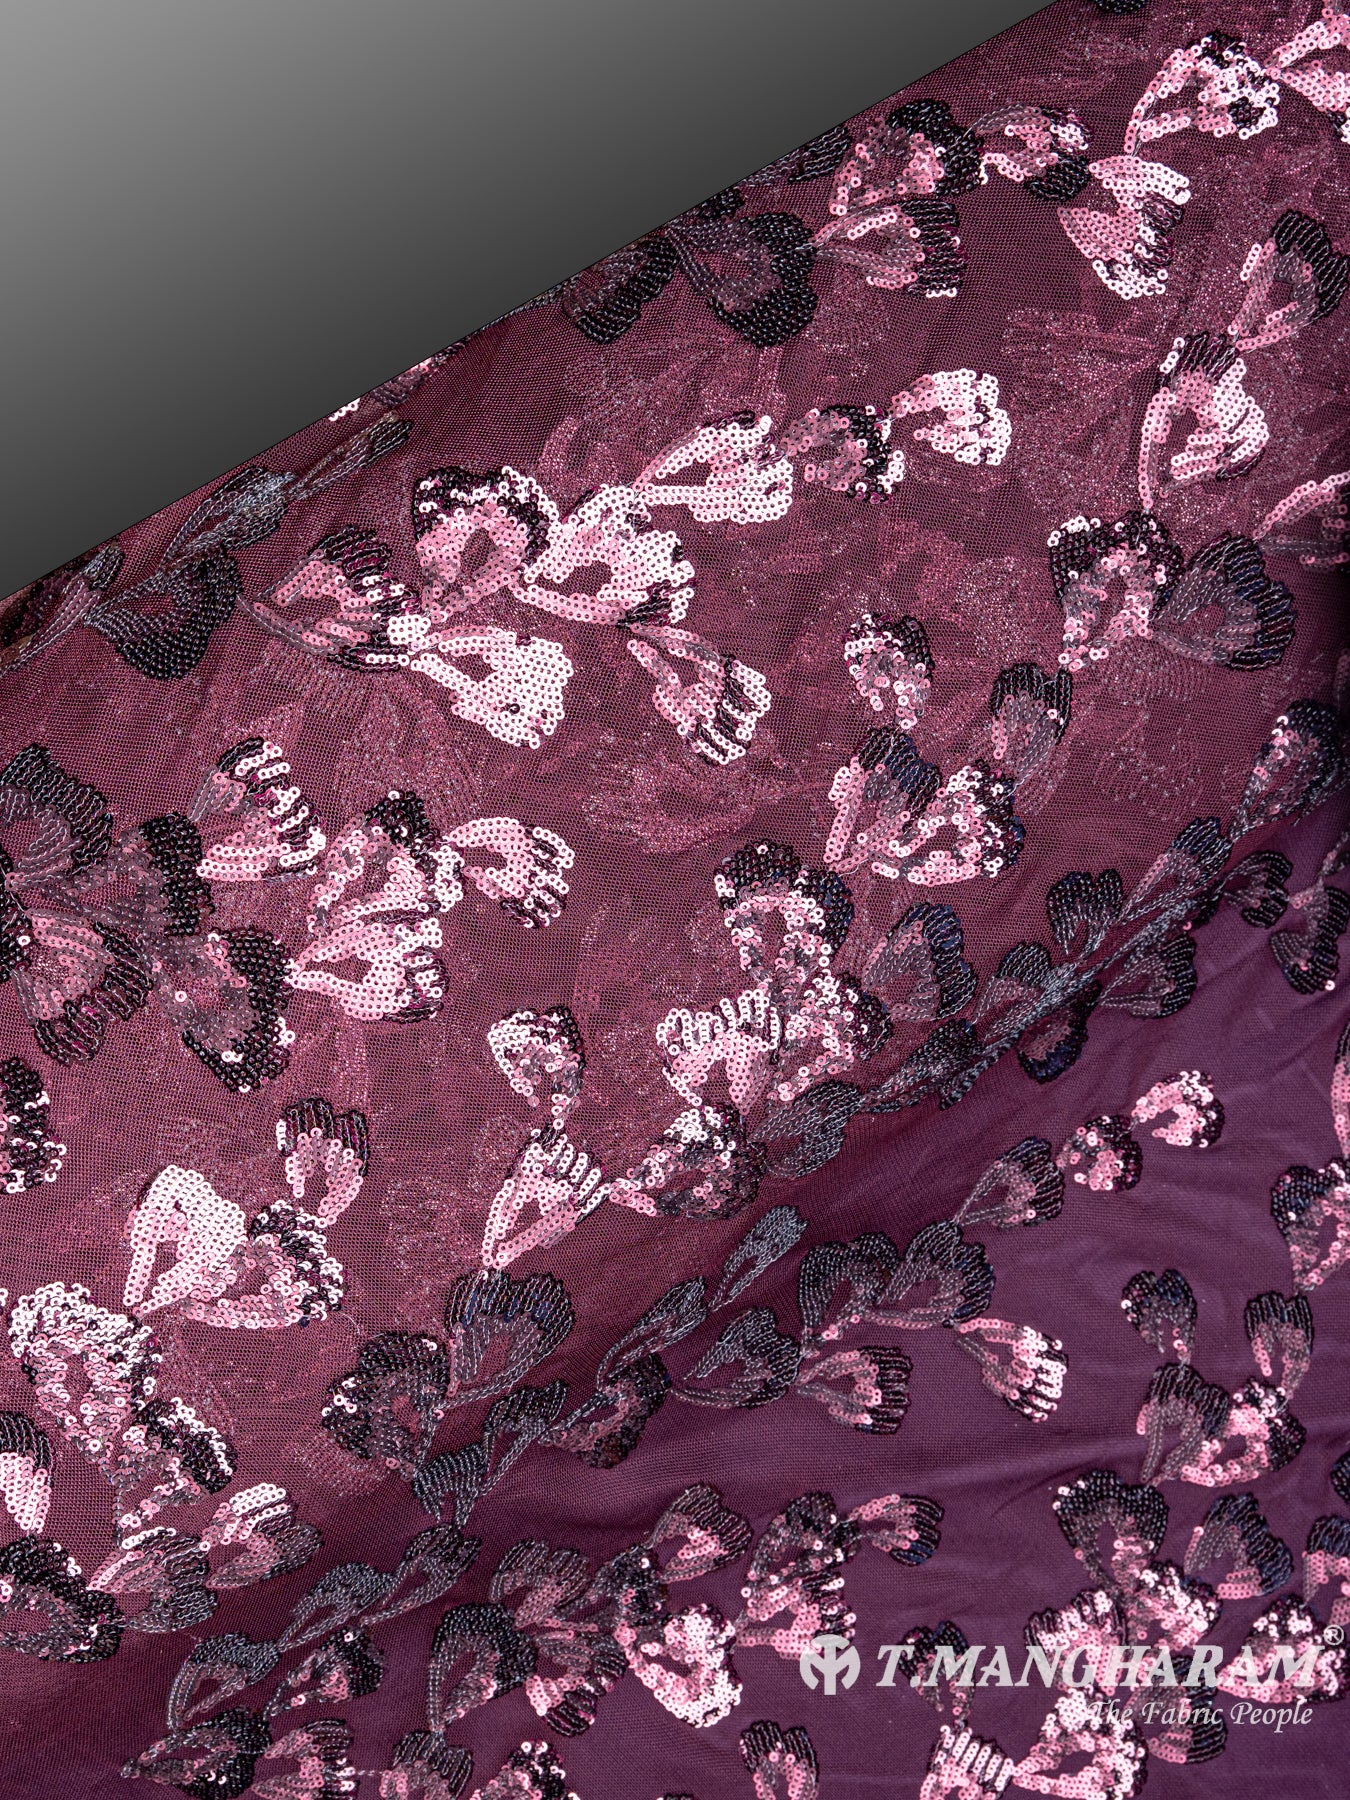 Purple Fancy Net Fabric - EC4445 view-2